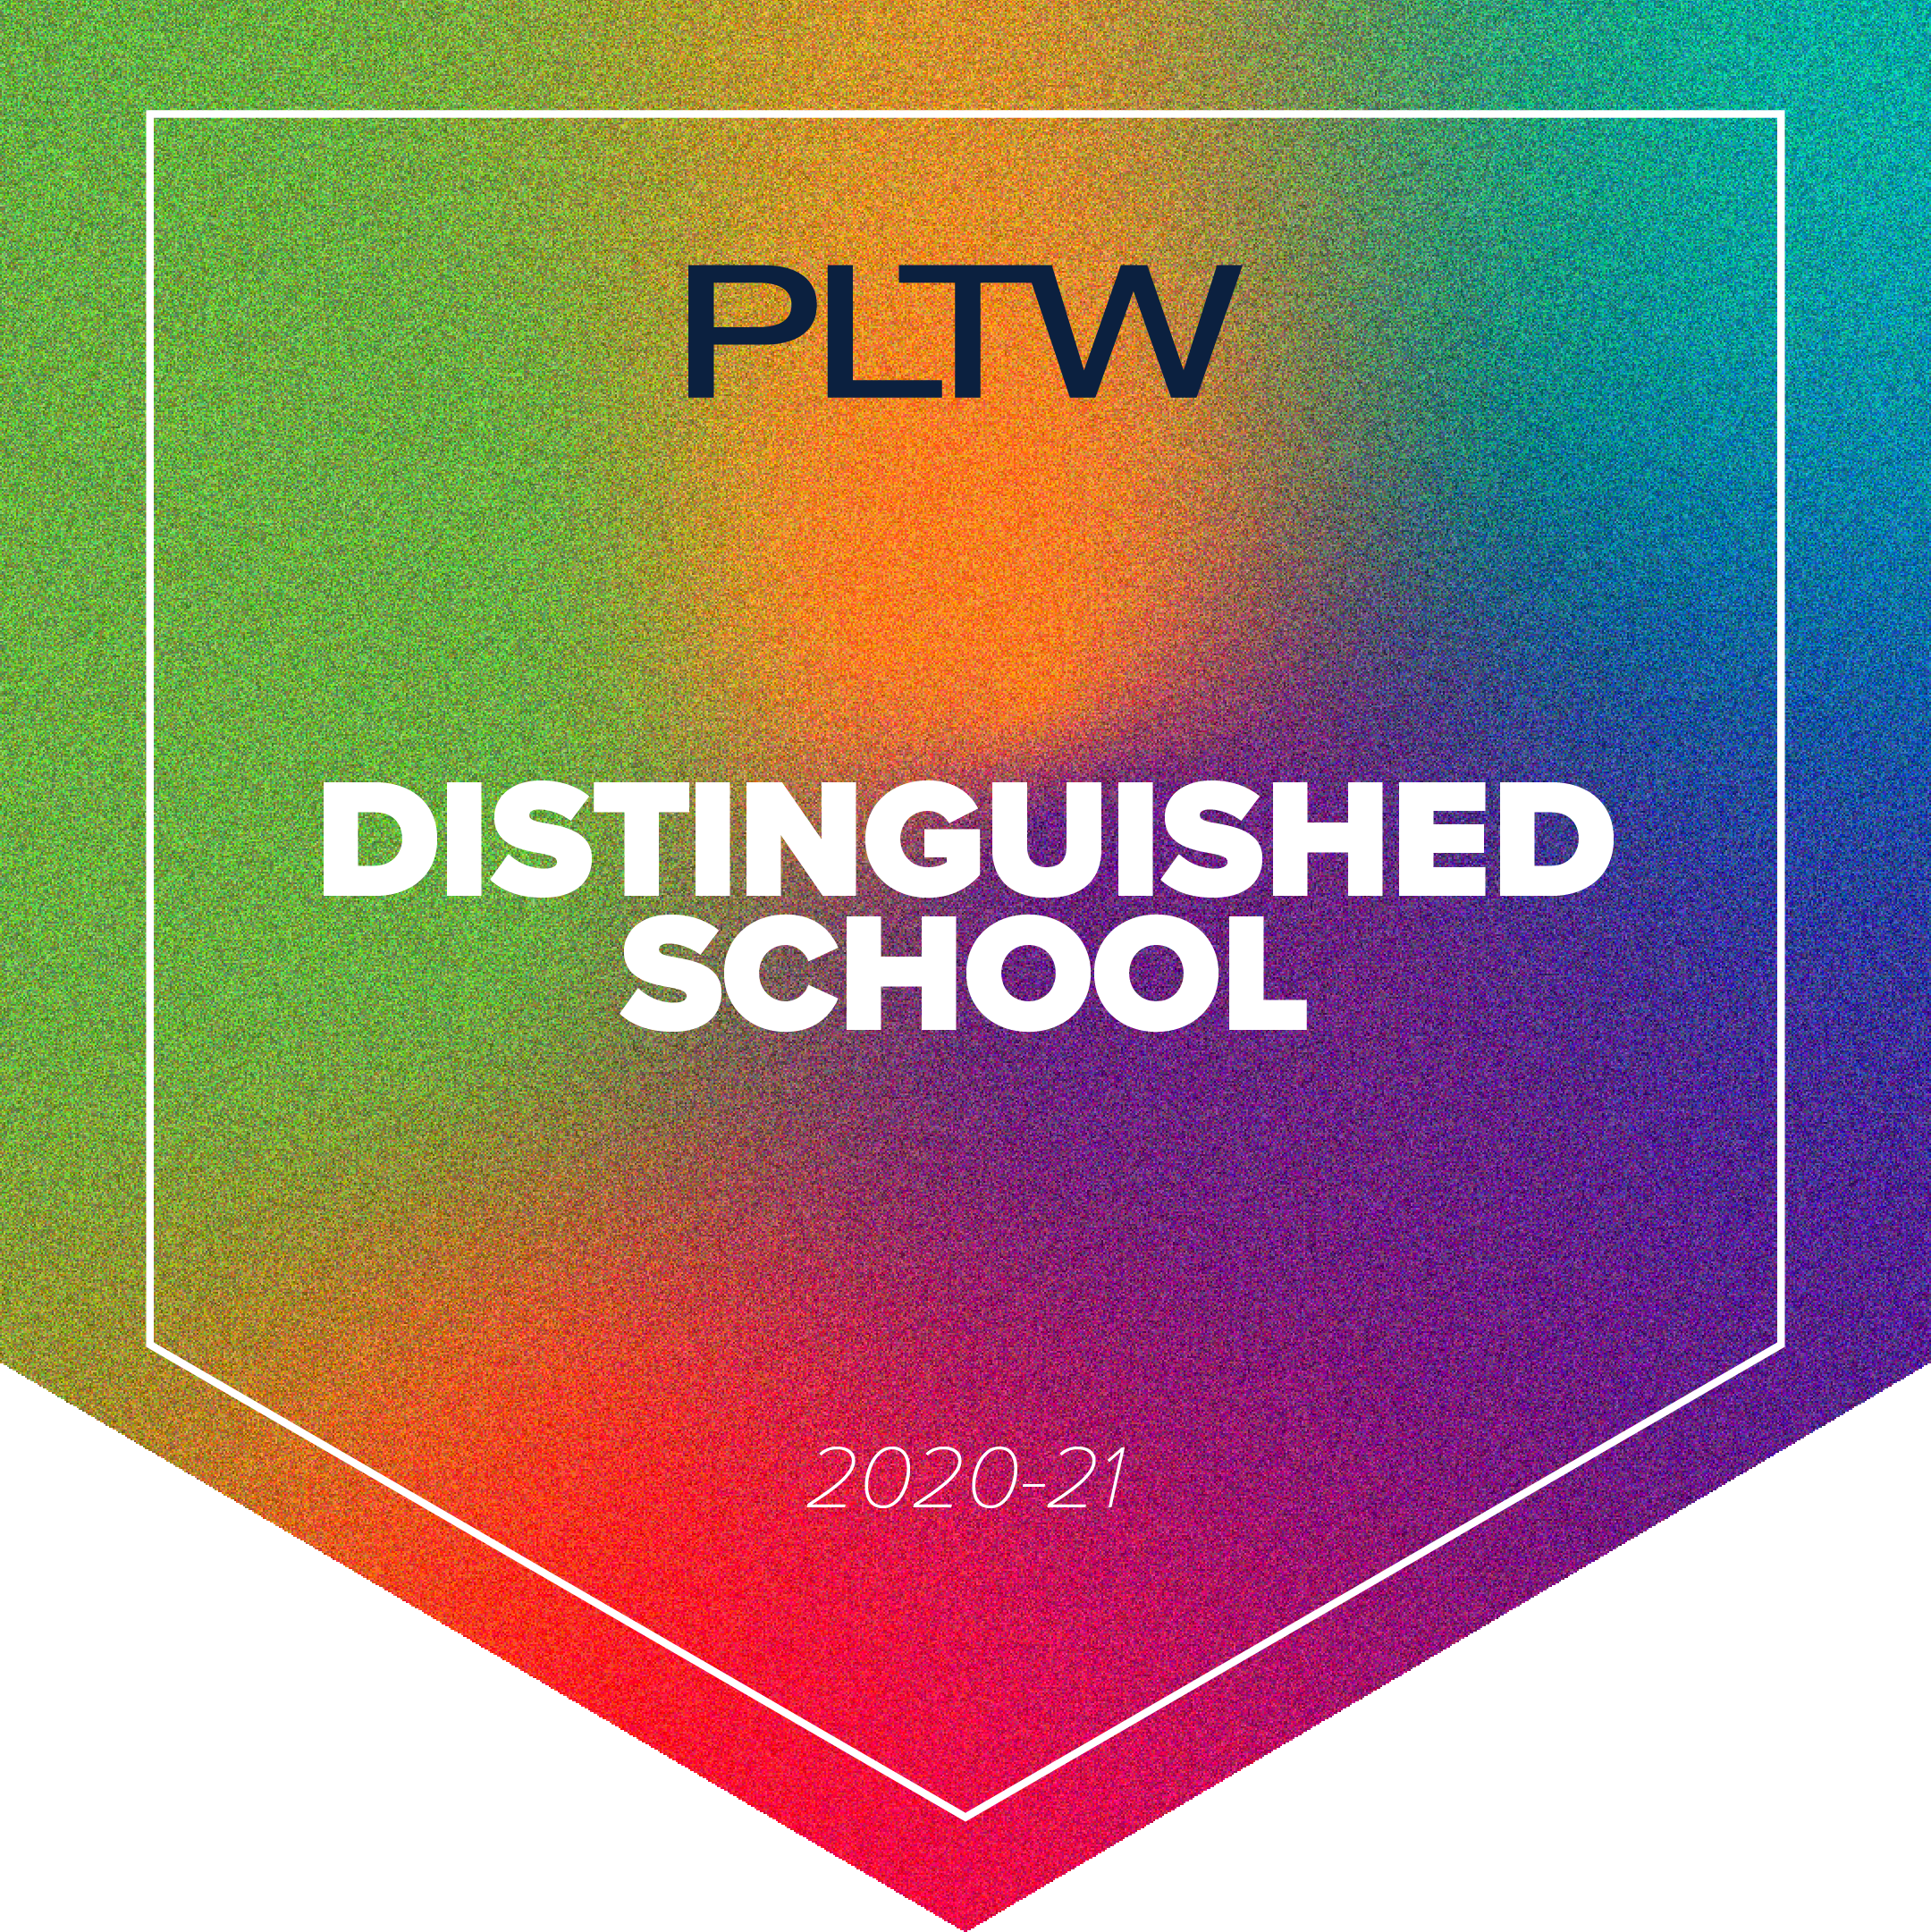 PLTW award